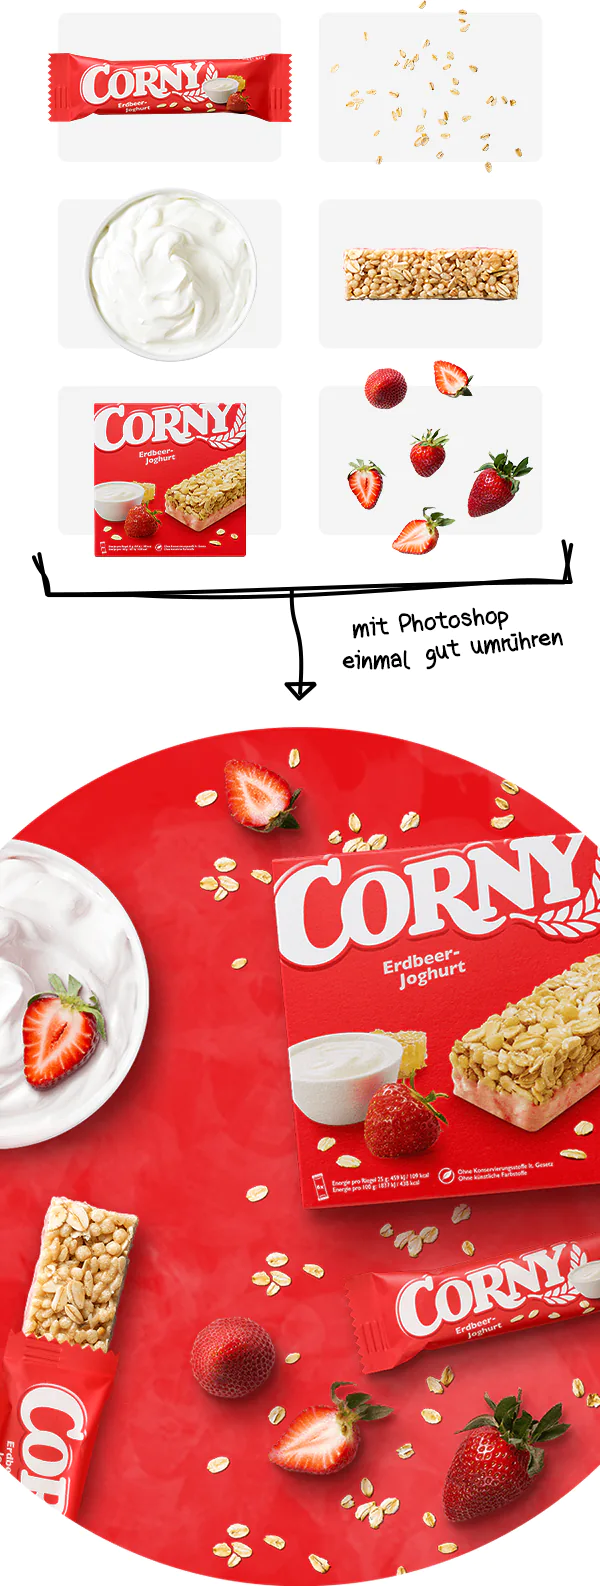 Einblick in die Erstellung der individuellen Produkt-Composings für Corny Erdbeer-Joghurt.